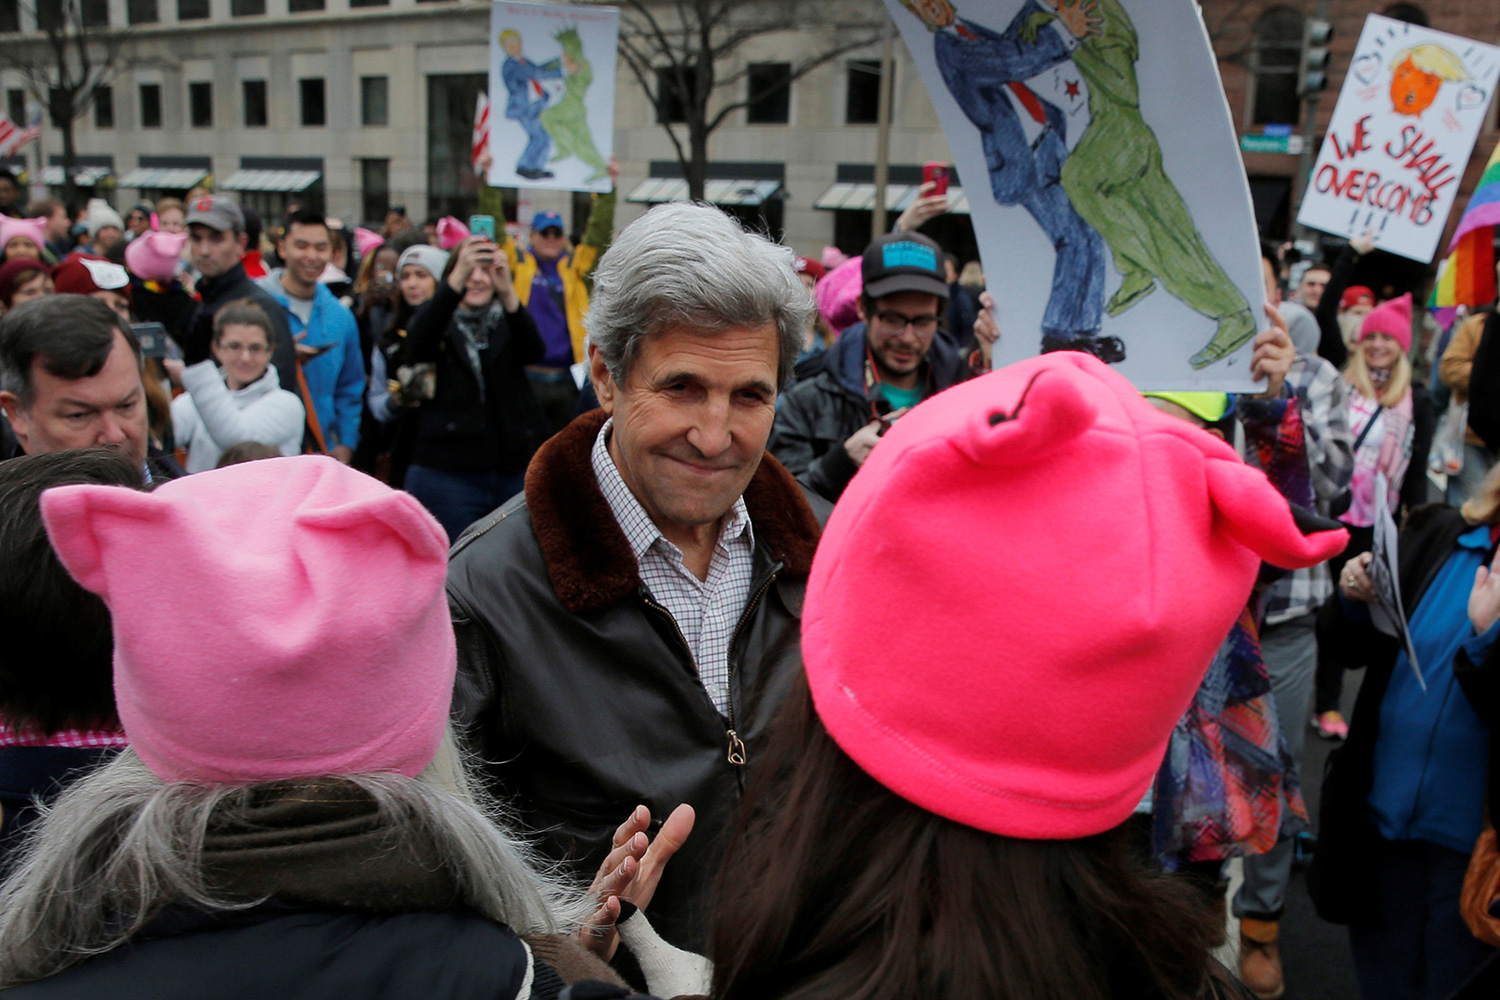 El ex Secretario de Estado de la Administración Obama, John Kerry, asistió también a la marcha en Washington. (Foto: Brian Snyder / Reuters)